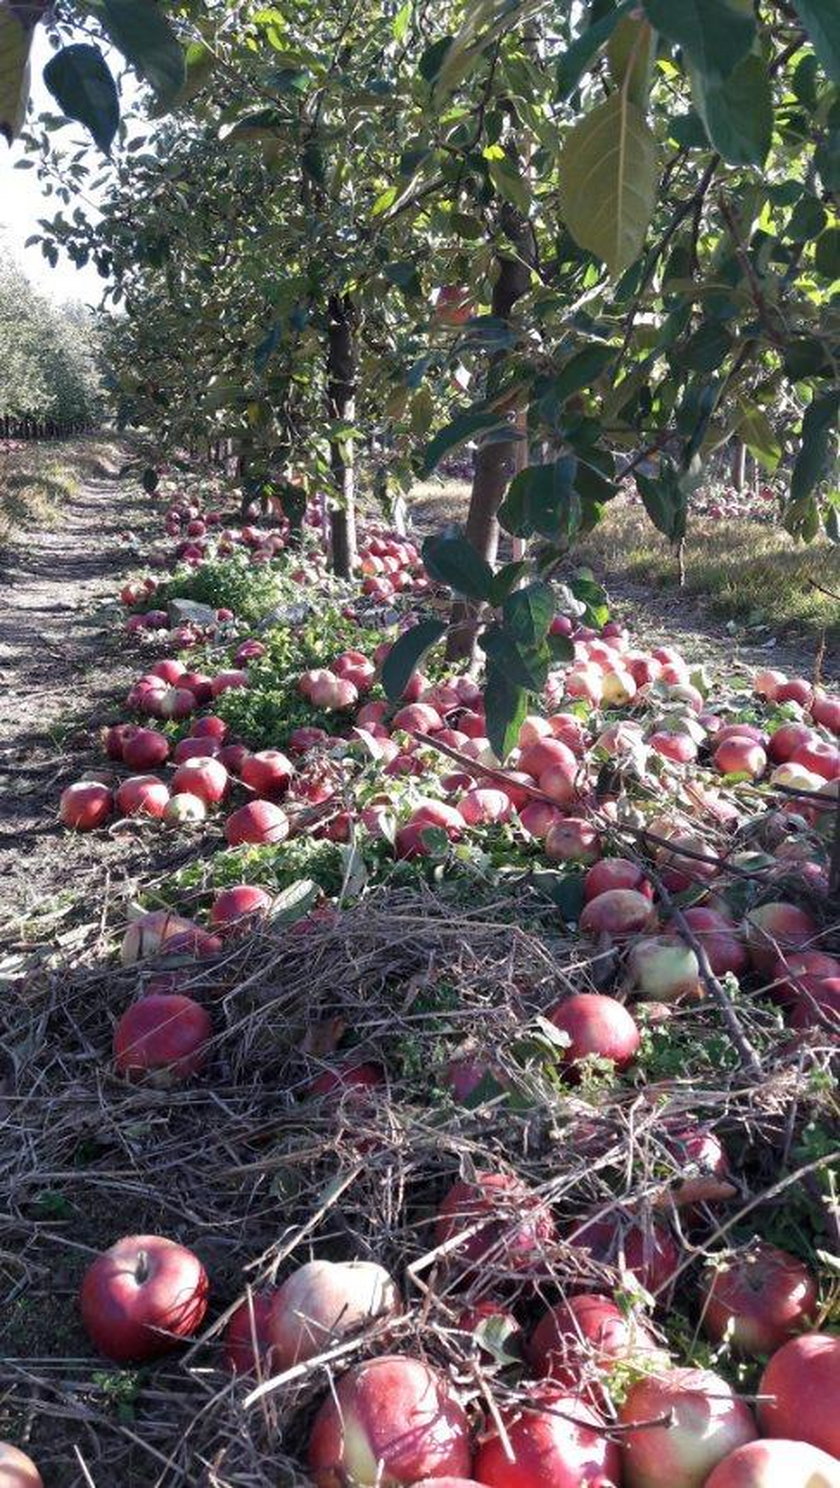 10 groszy za kilogram jabłek w skupie. Rolnicy załamani. Sady toną w owocach